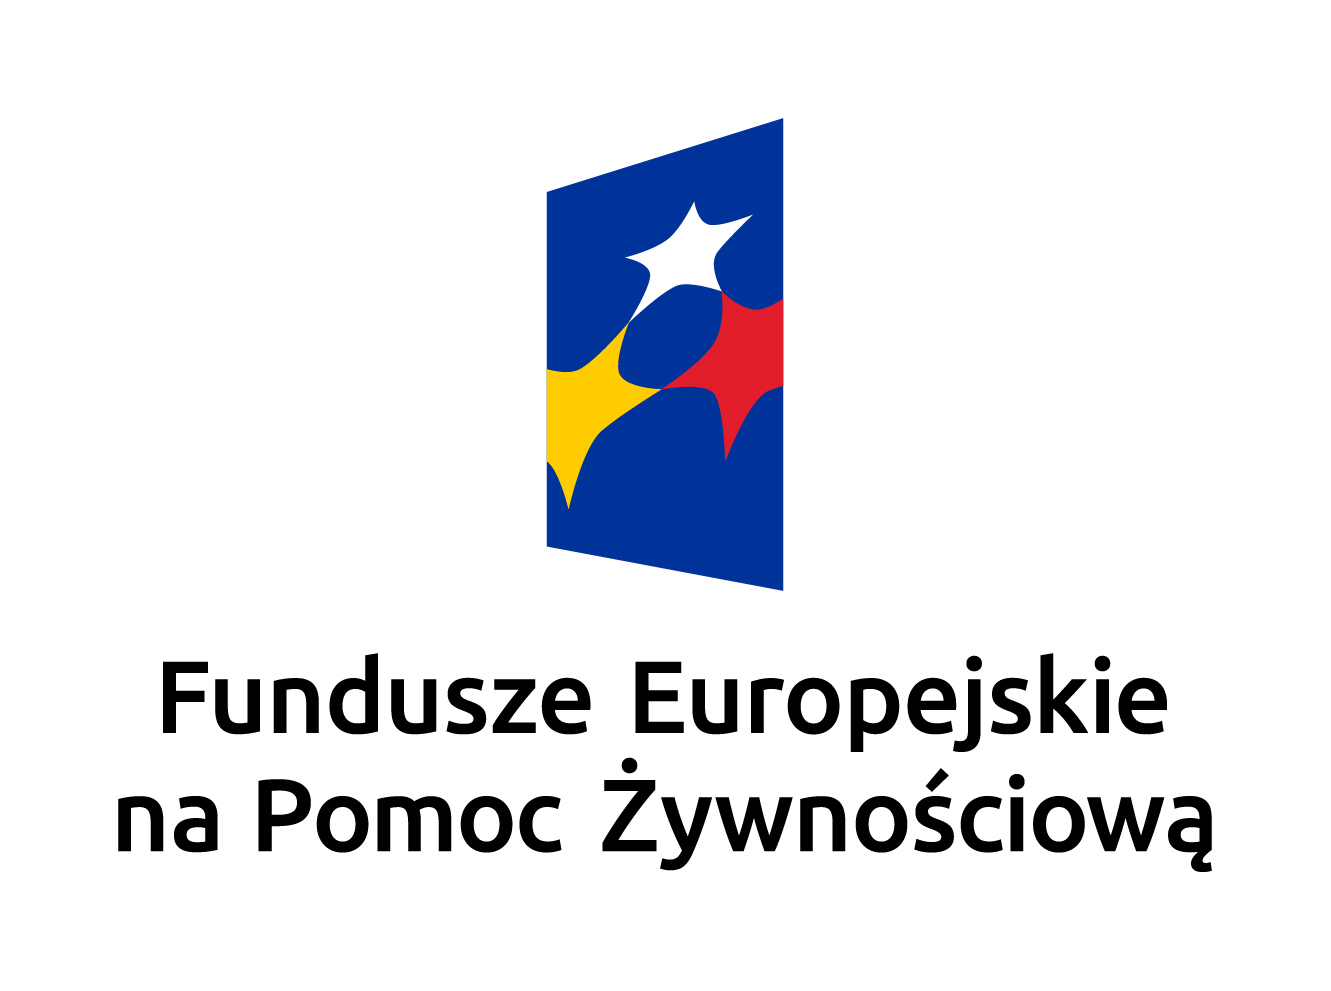 FE_na_Pomoc_Zywnosciowa_CMYK